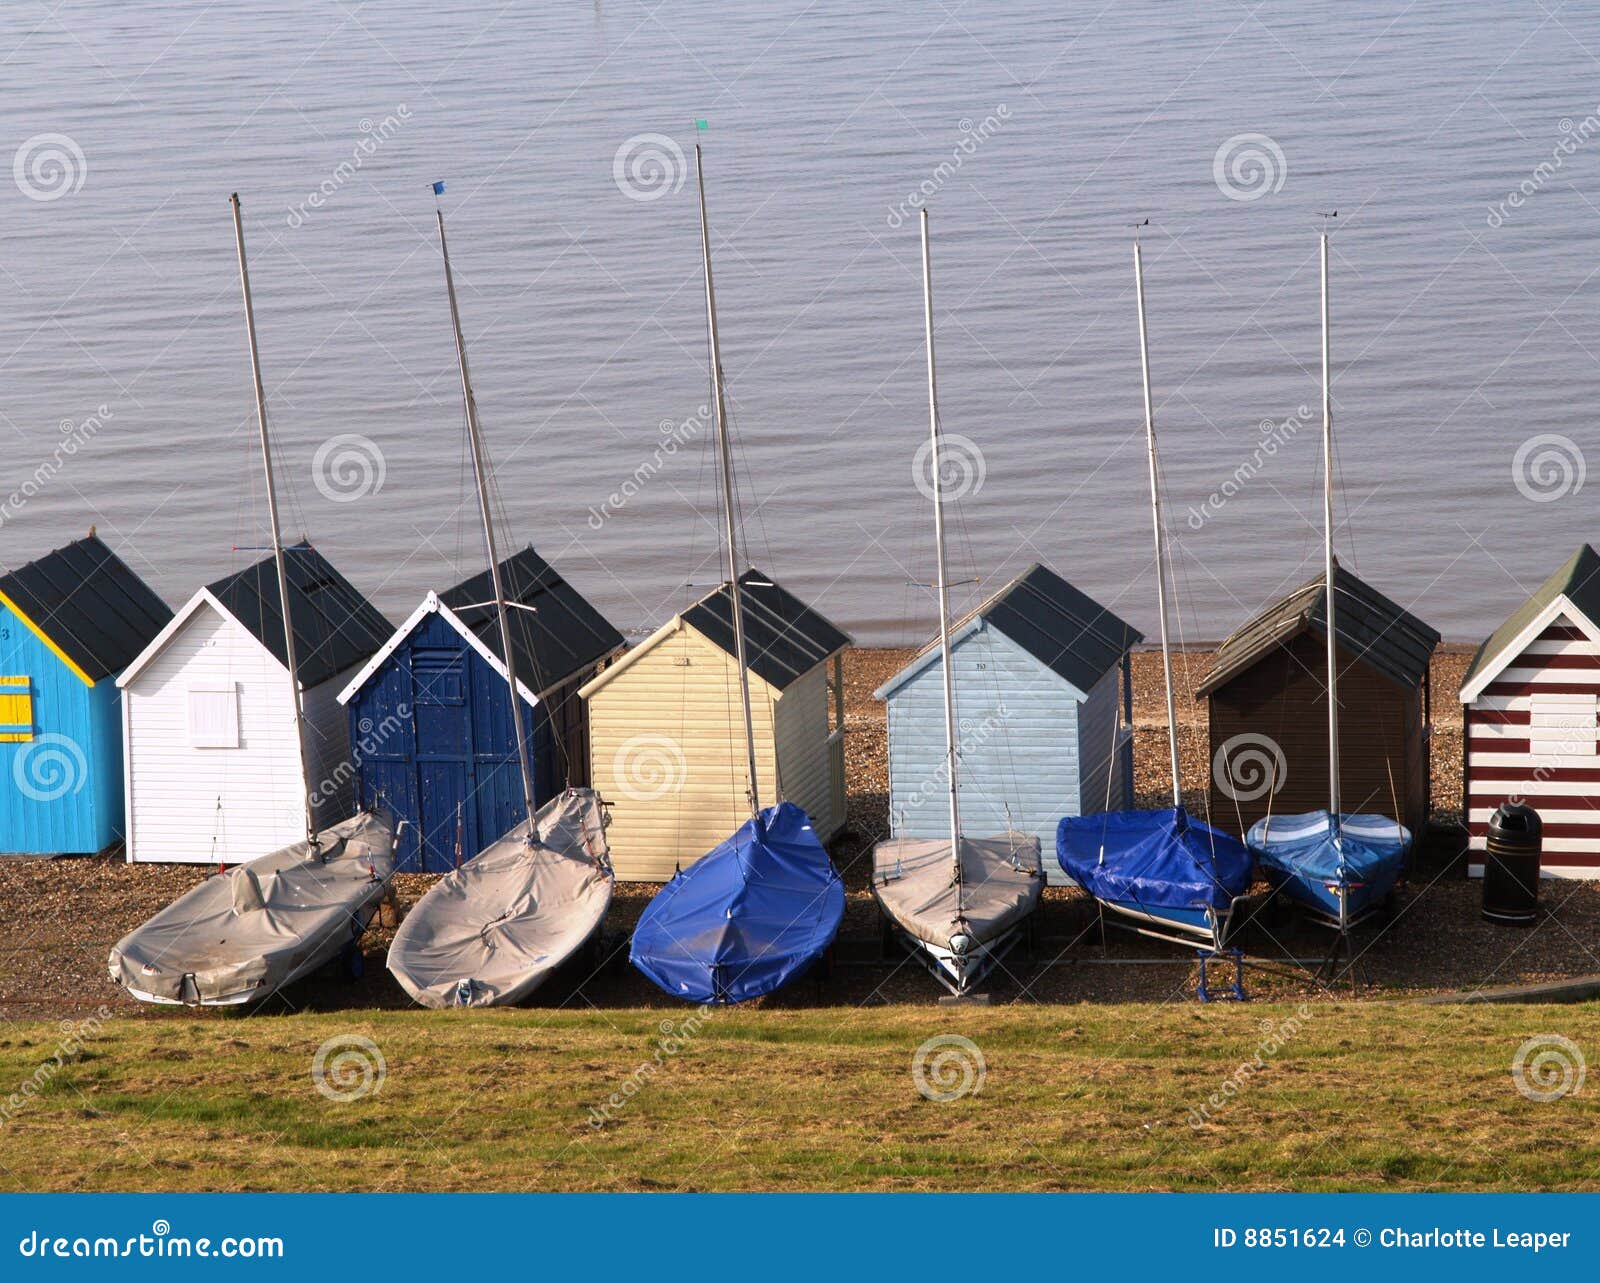 beach huts and sailing boats